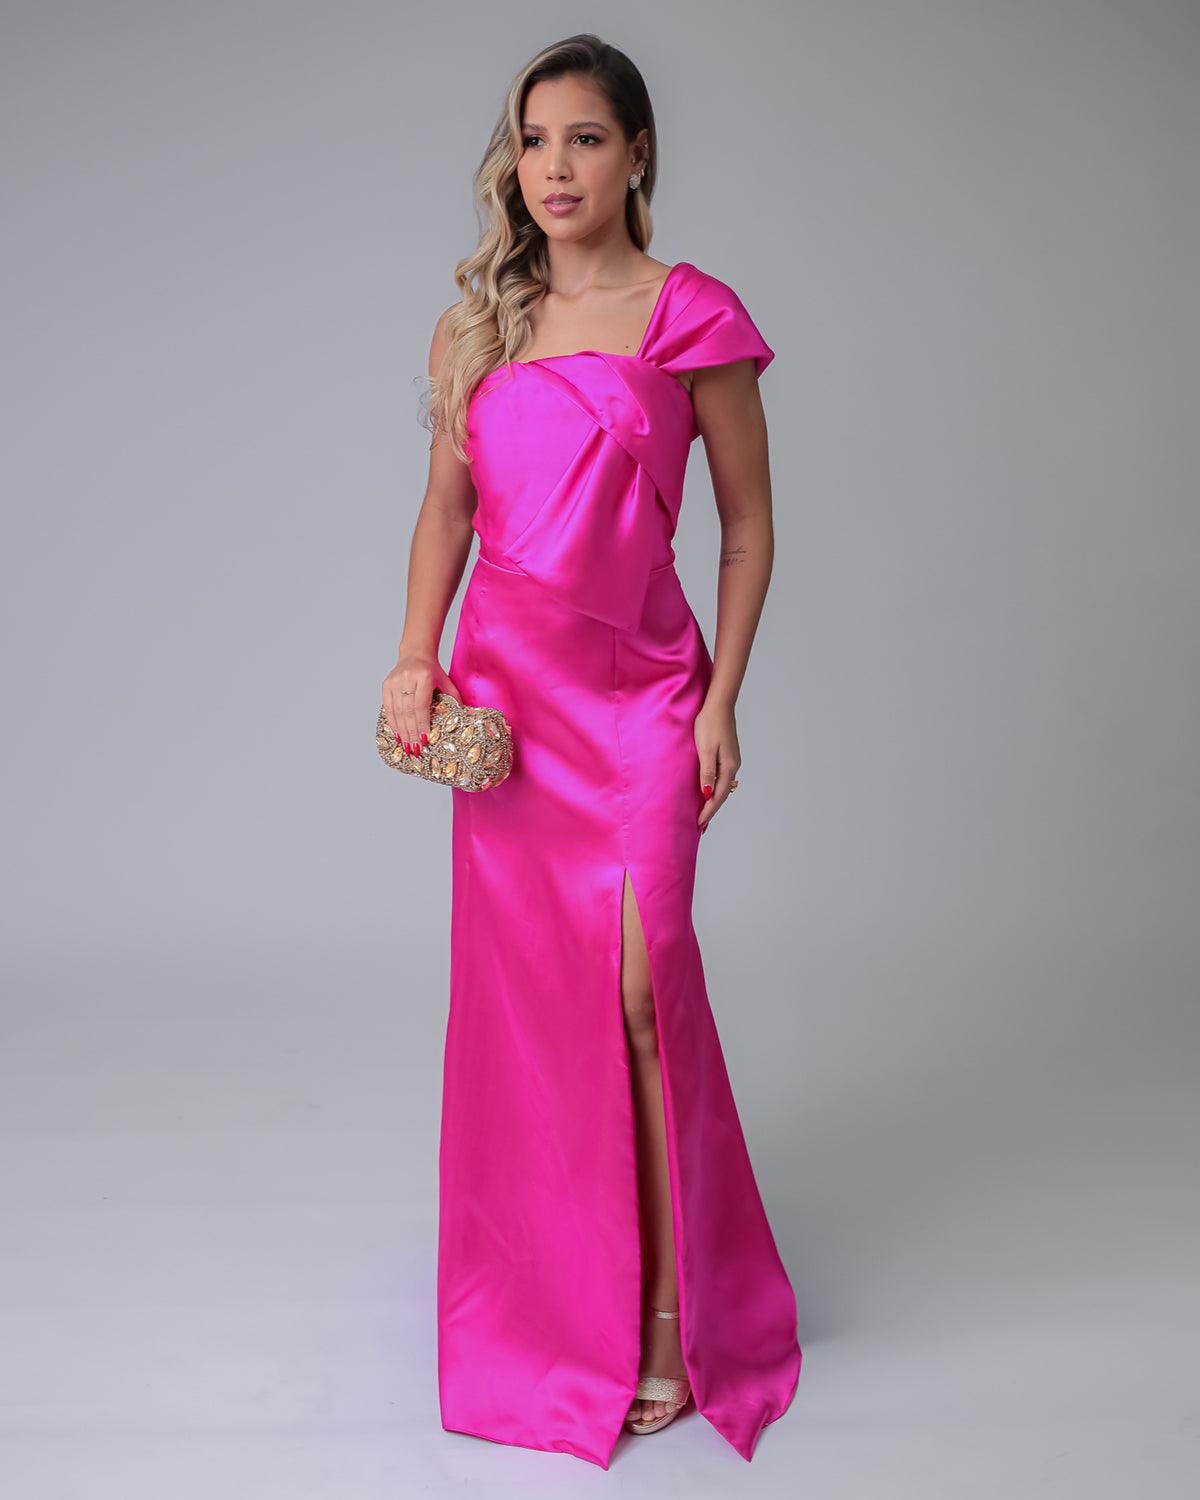 Vestido longo pink com detalhe de laço